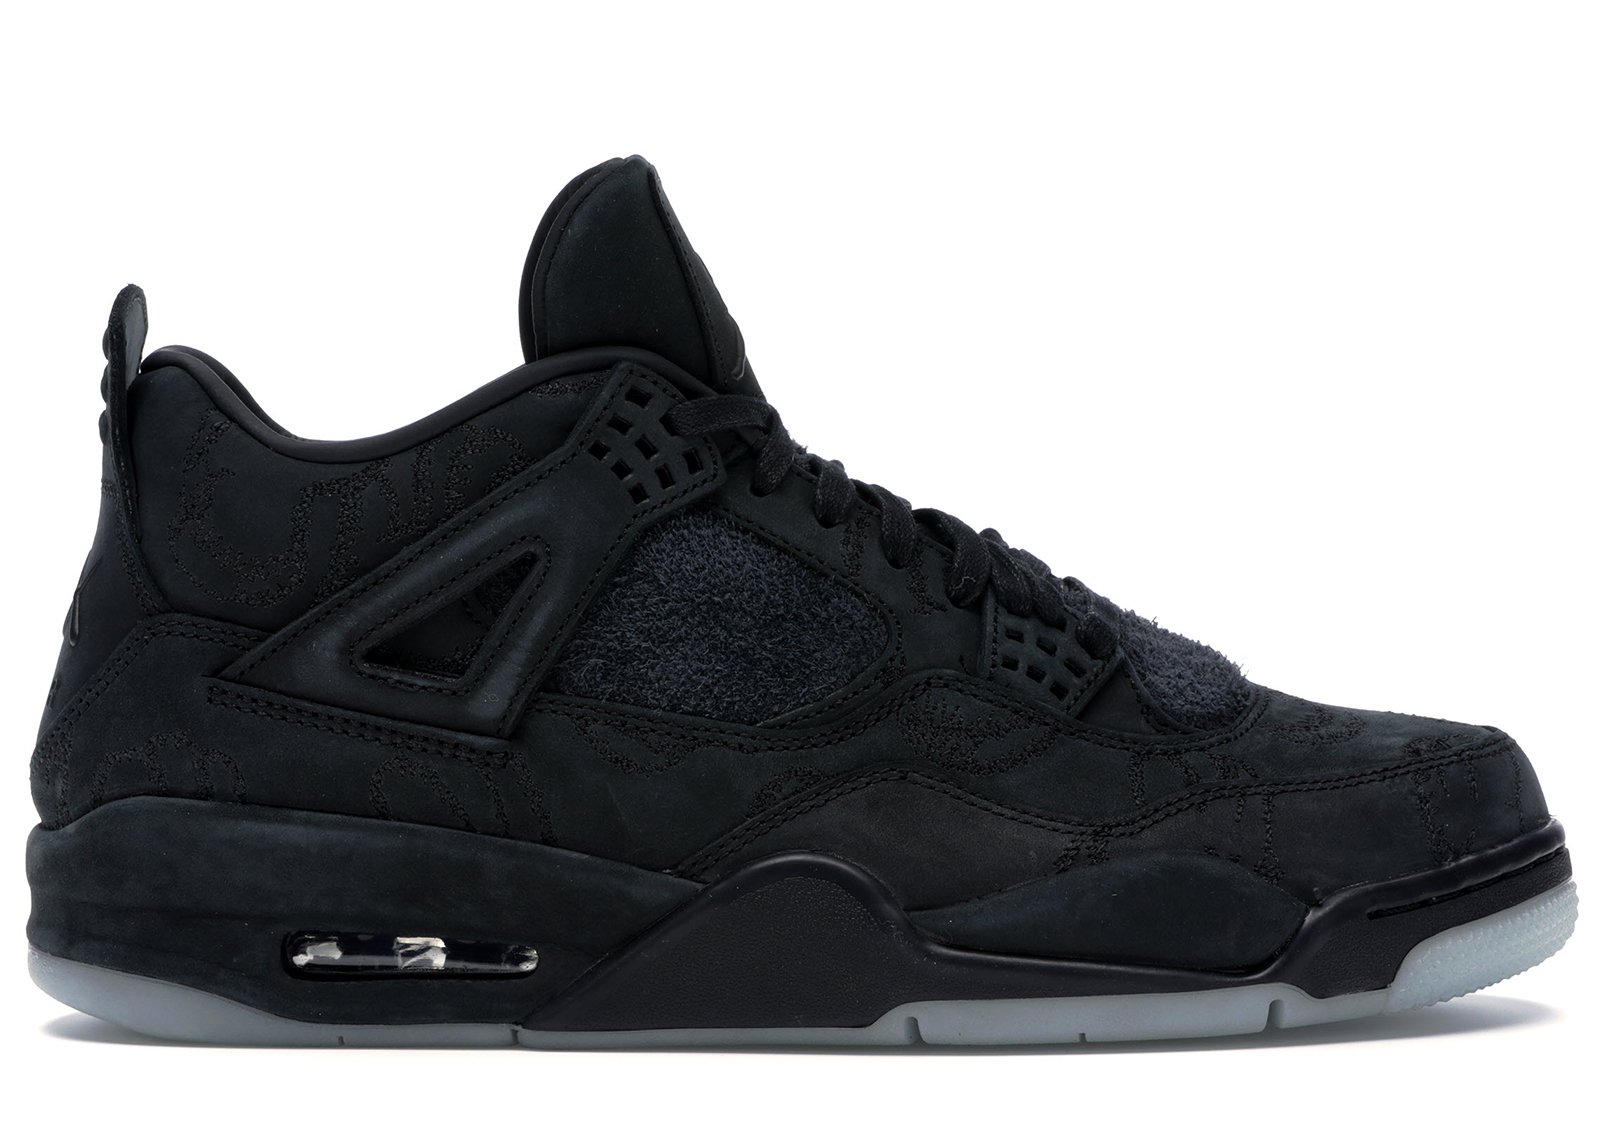 Jordan 4 Retro Kaws Black sneakers